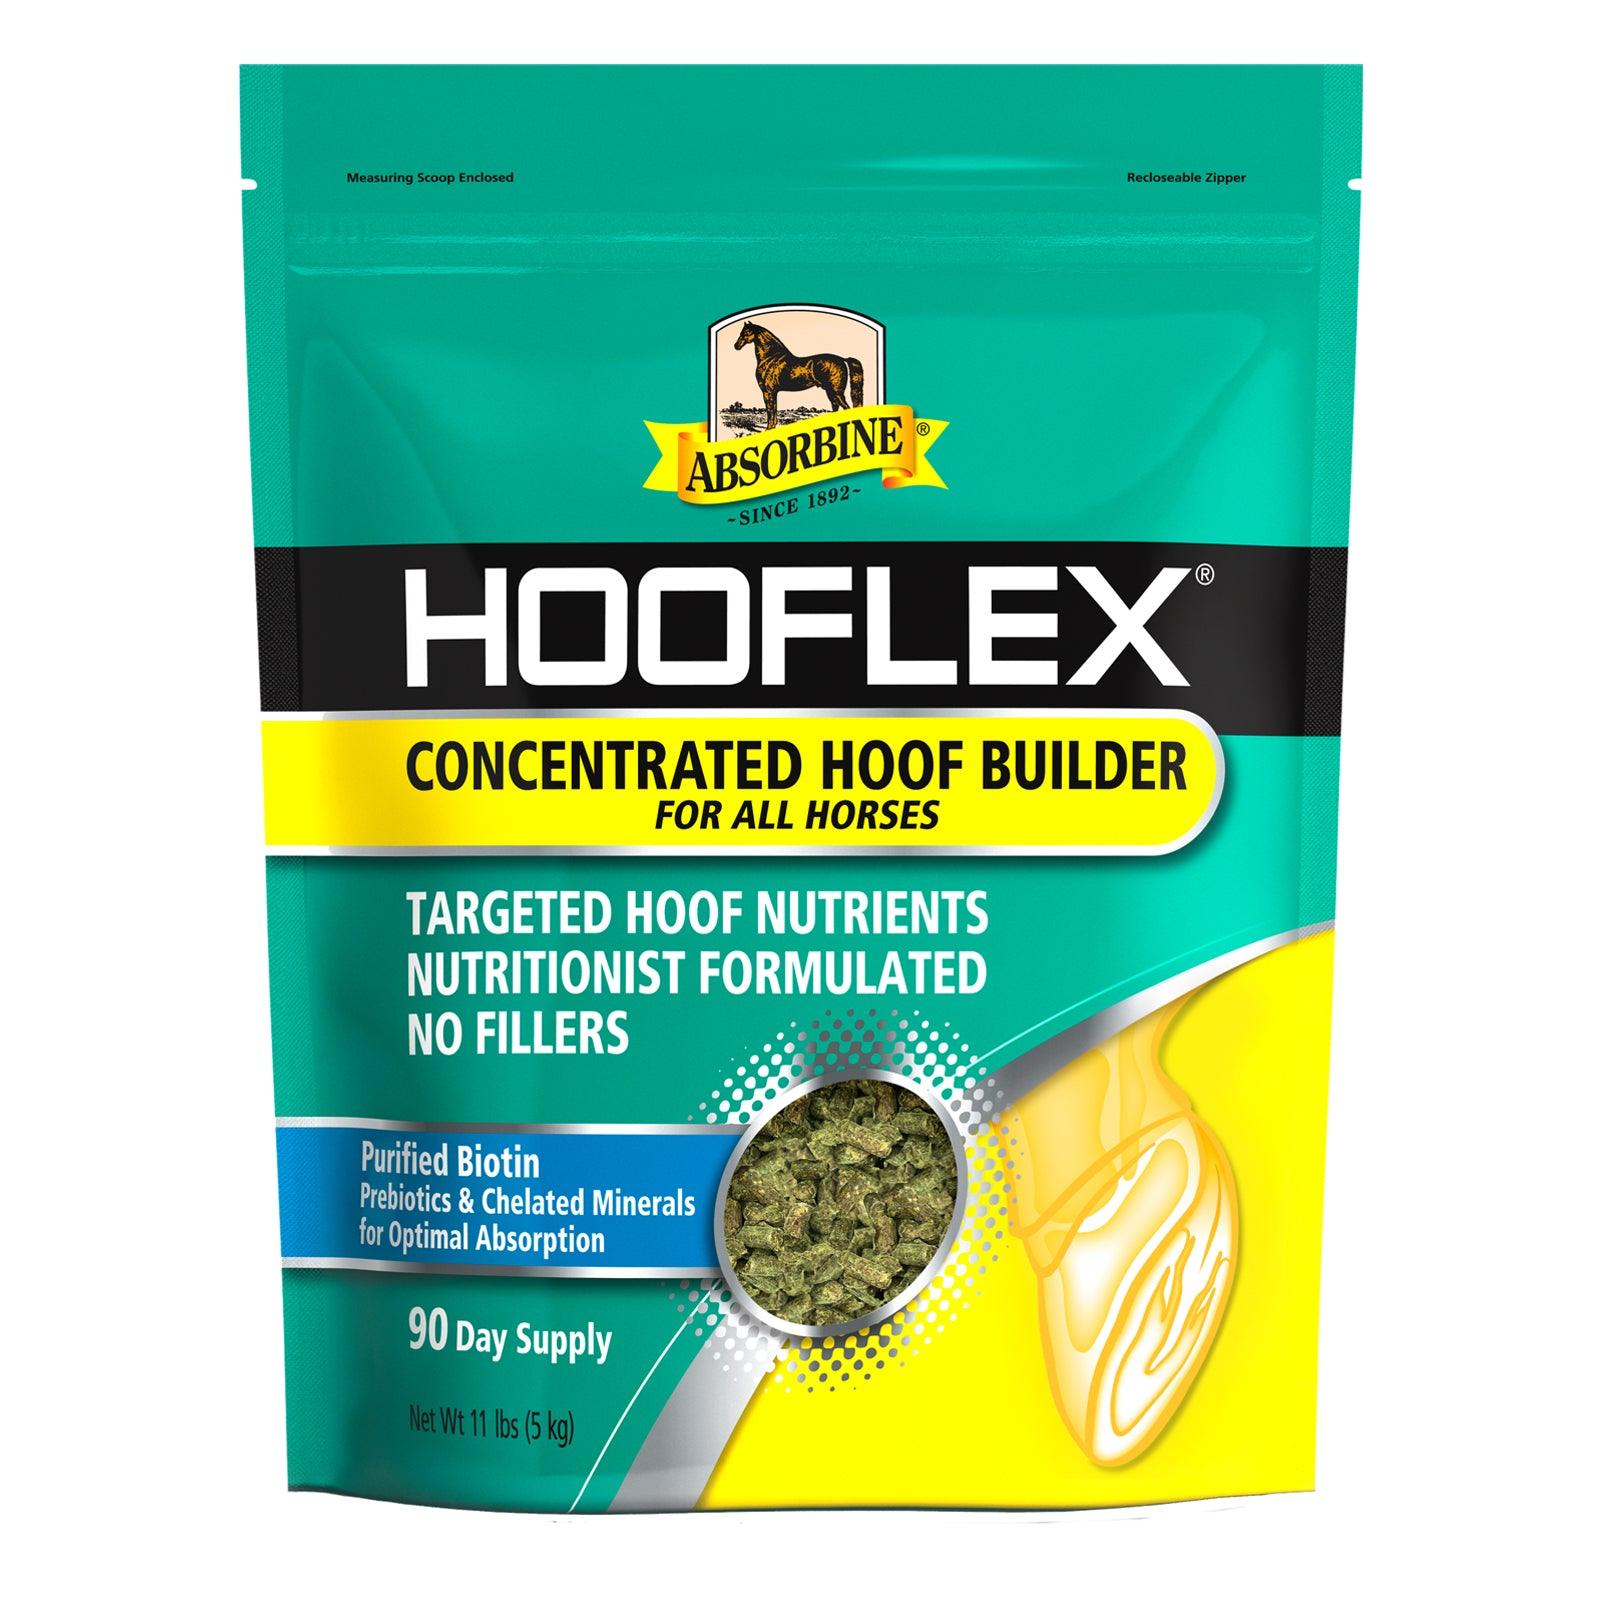 Hooflex® Concentrated Hoof Builder Supplement Hoof Care absorbine   